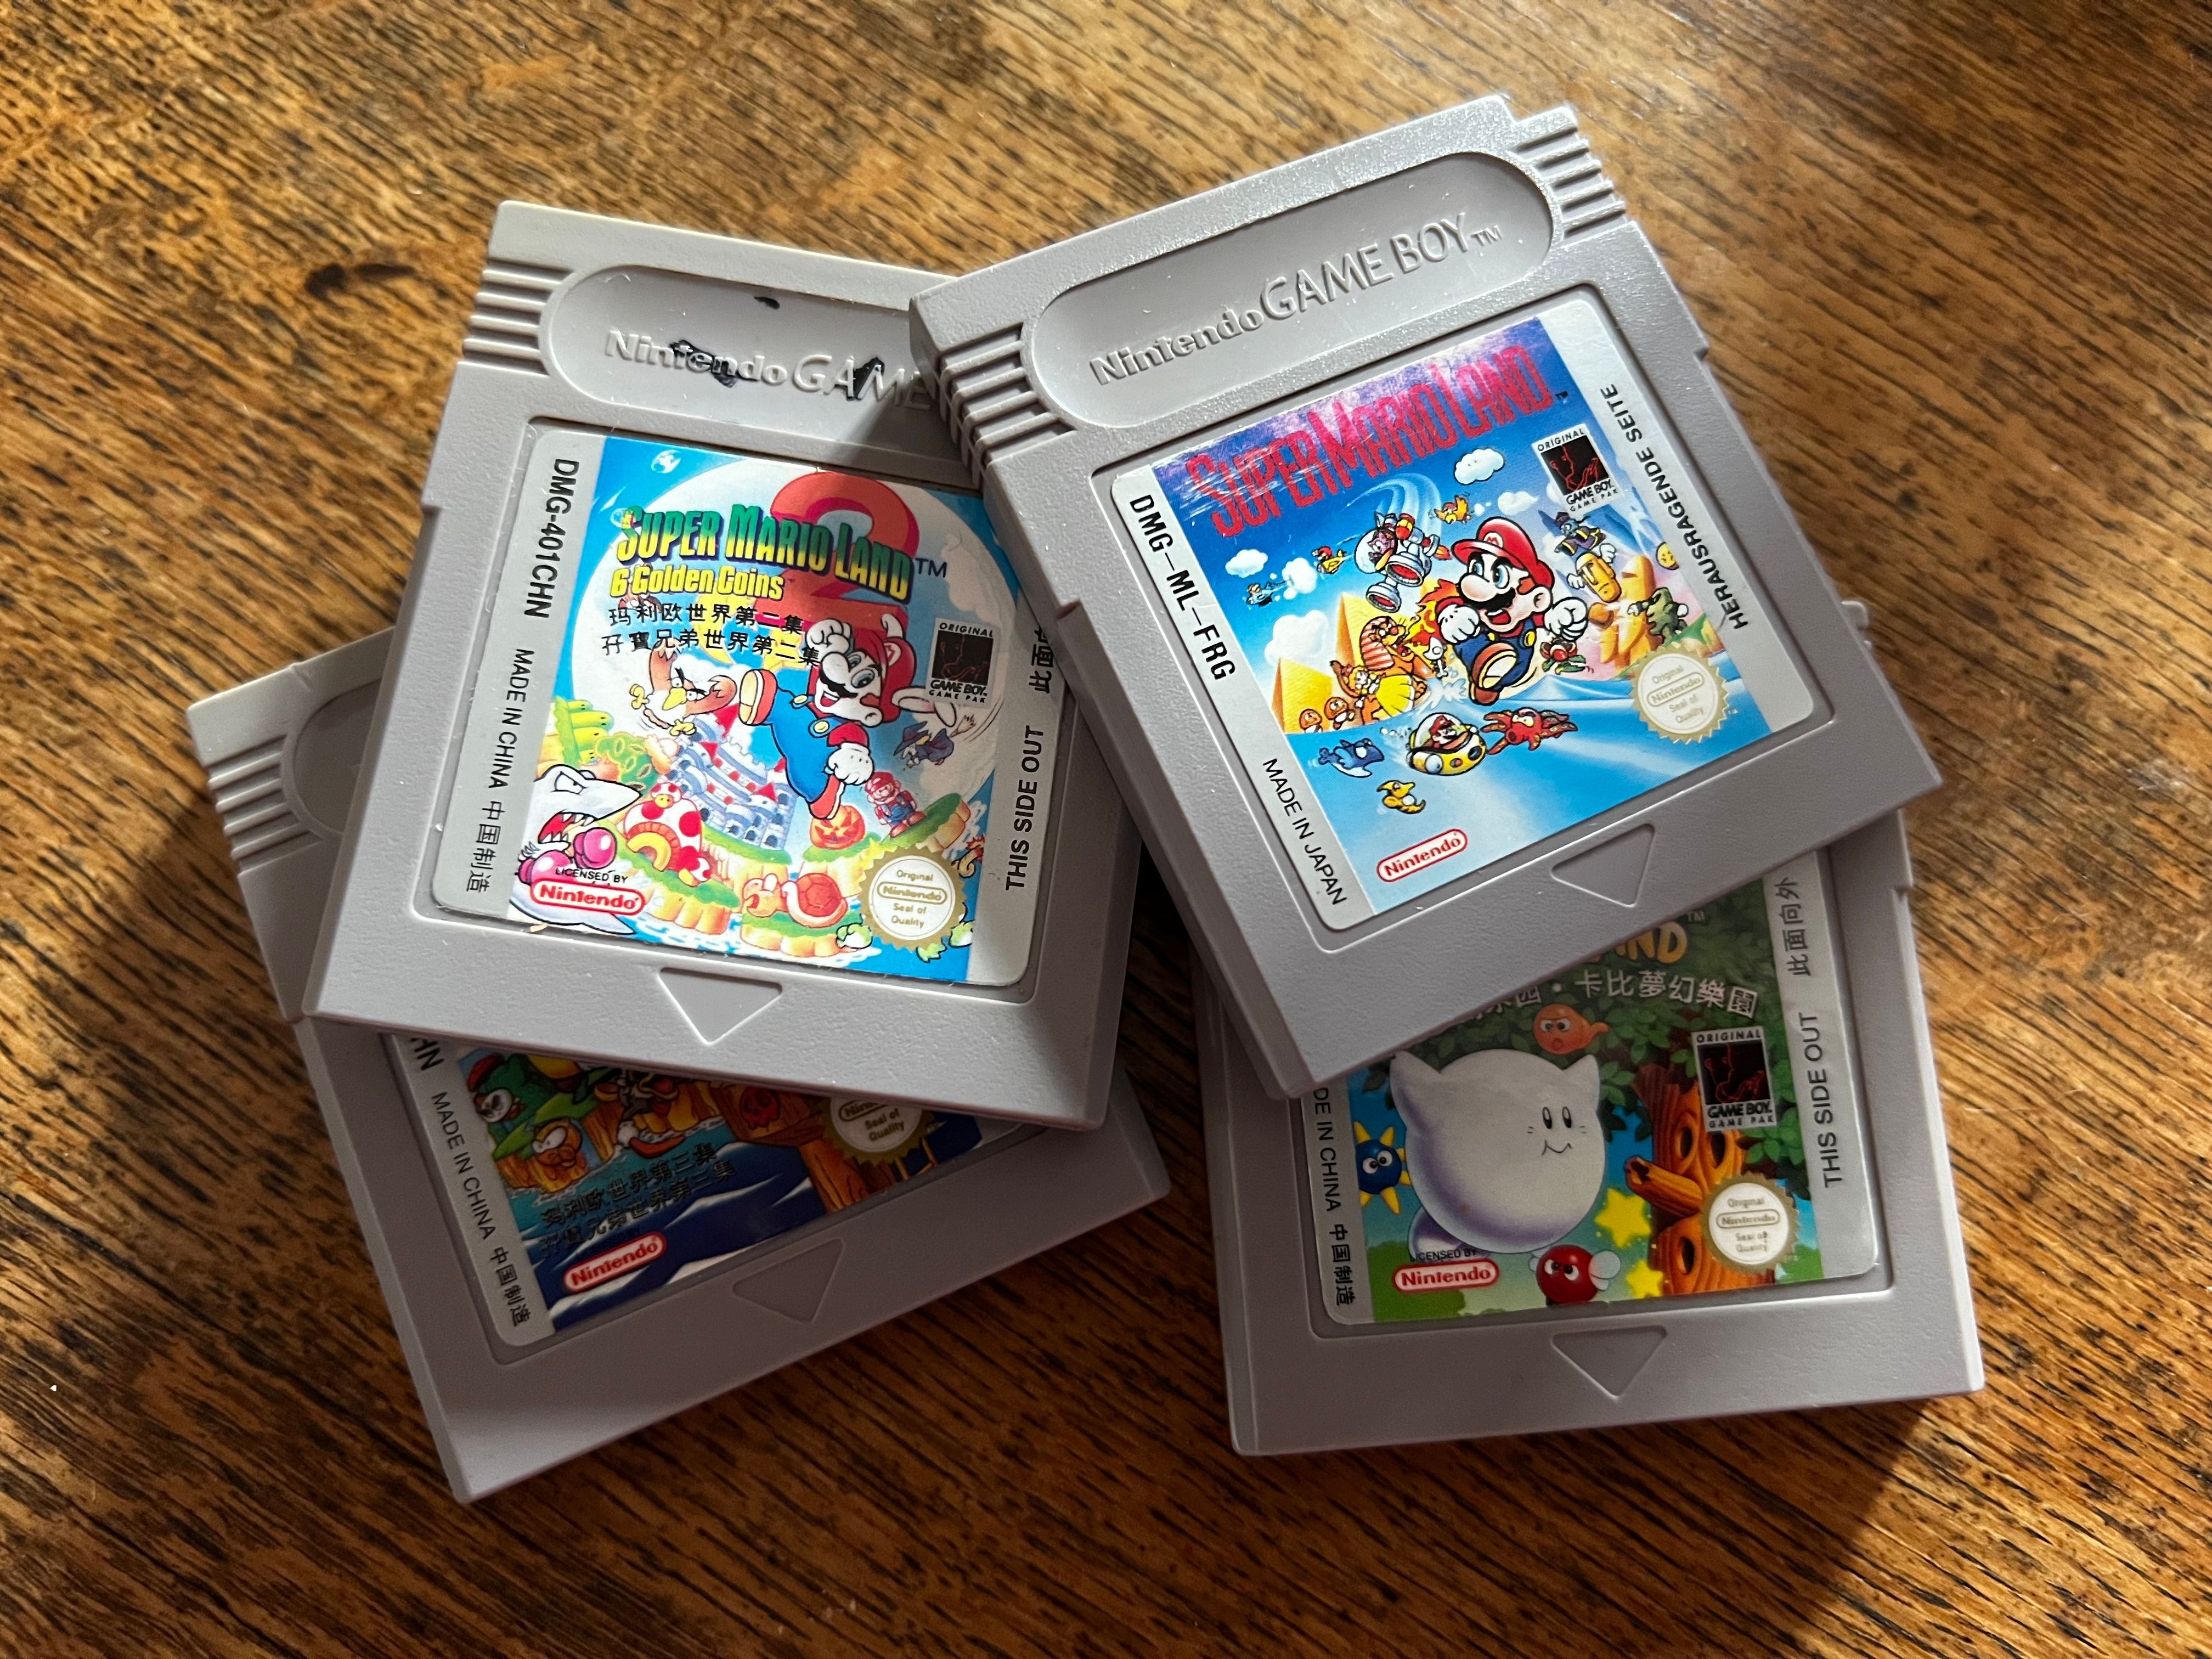 کارتریج های اصلی Game Boy.